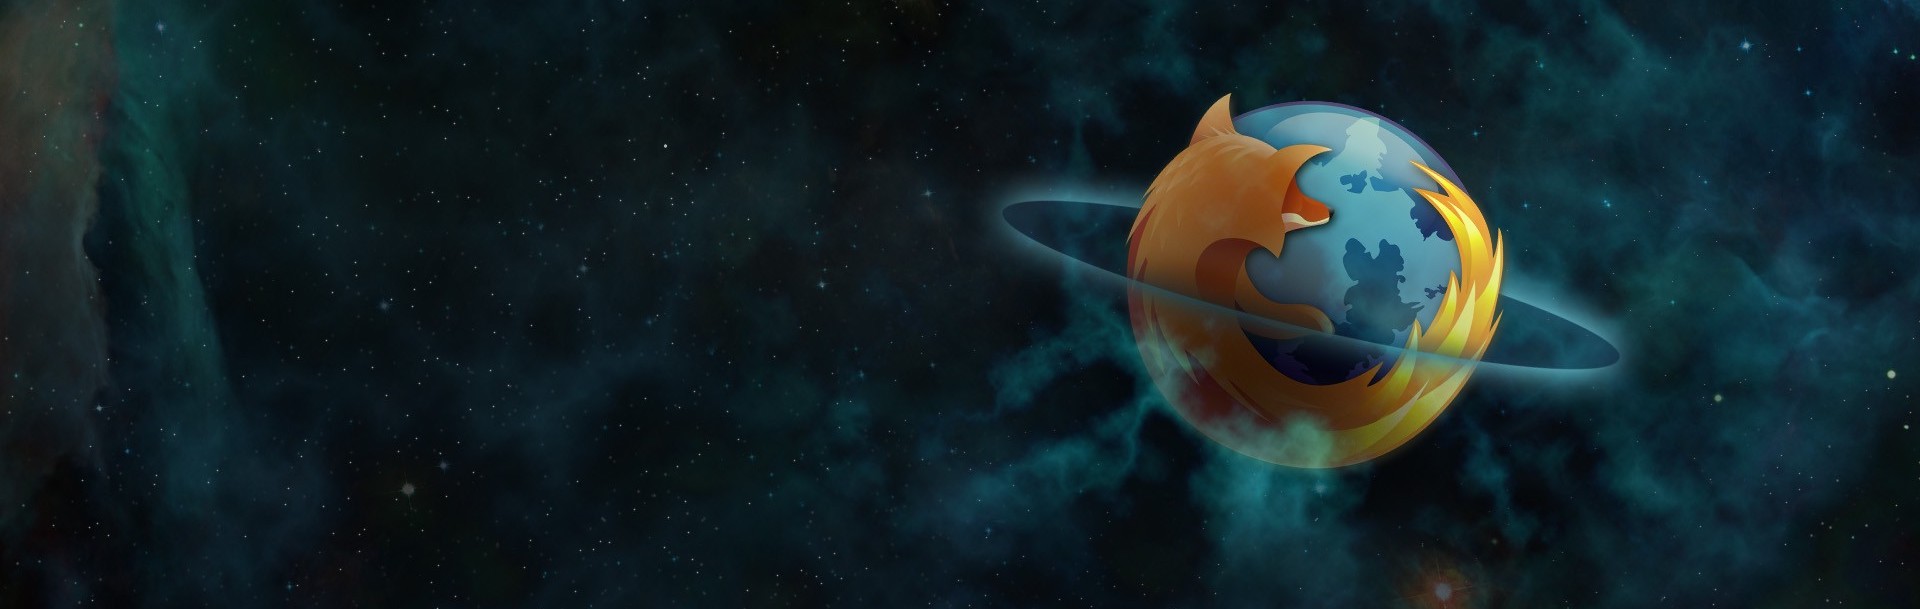 Navigateur Firefox